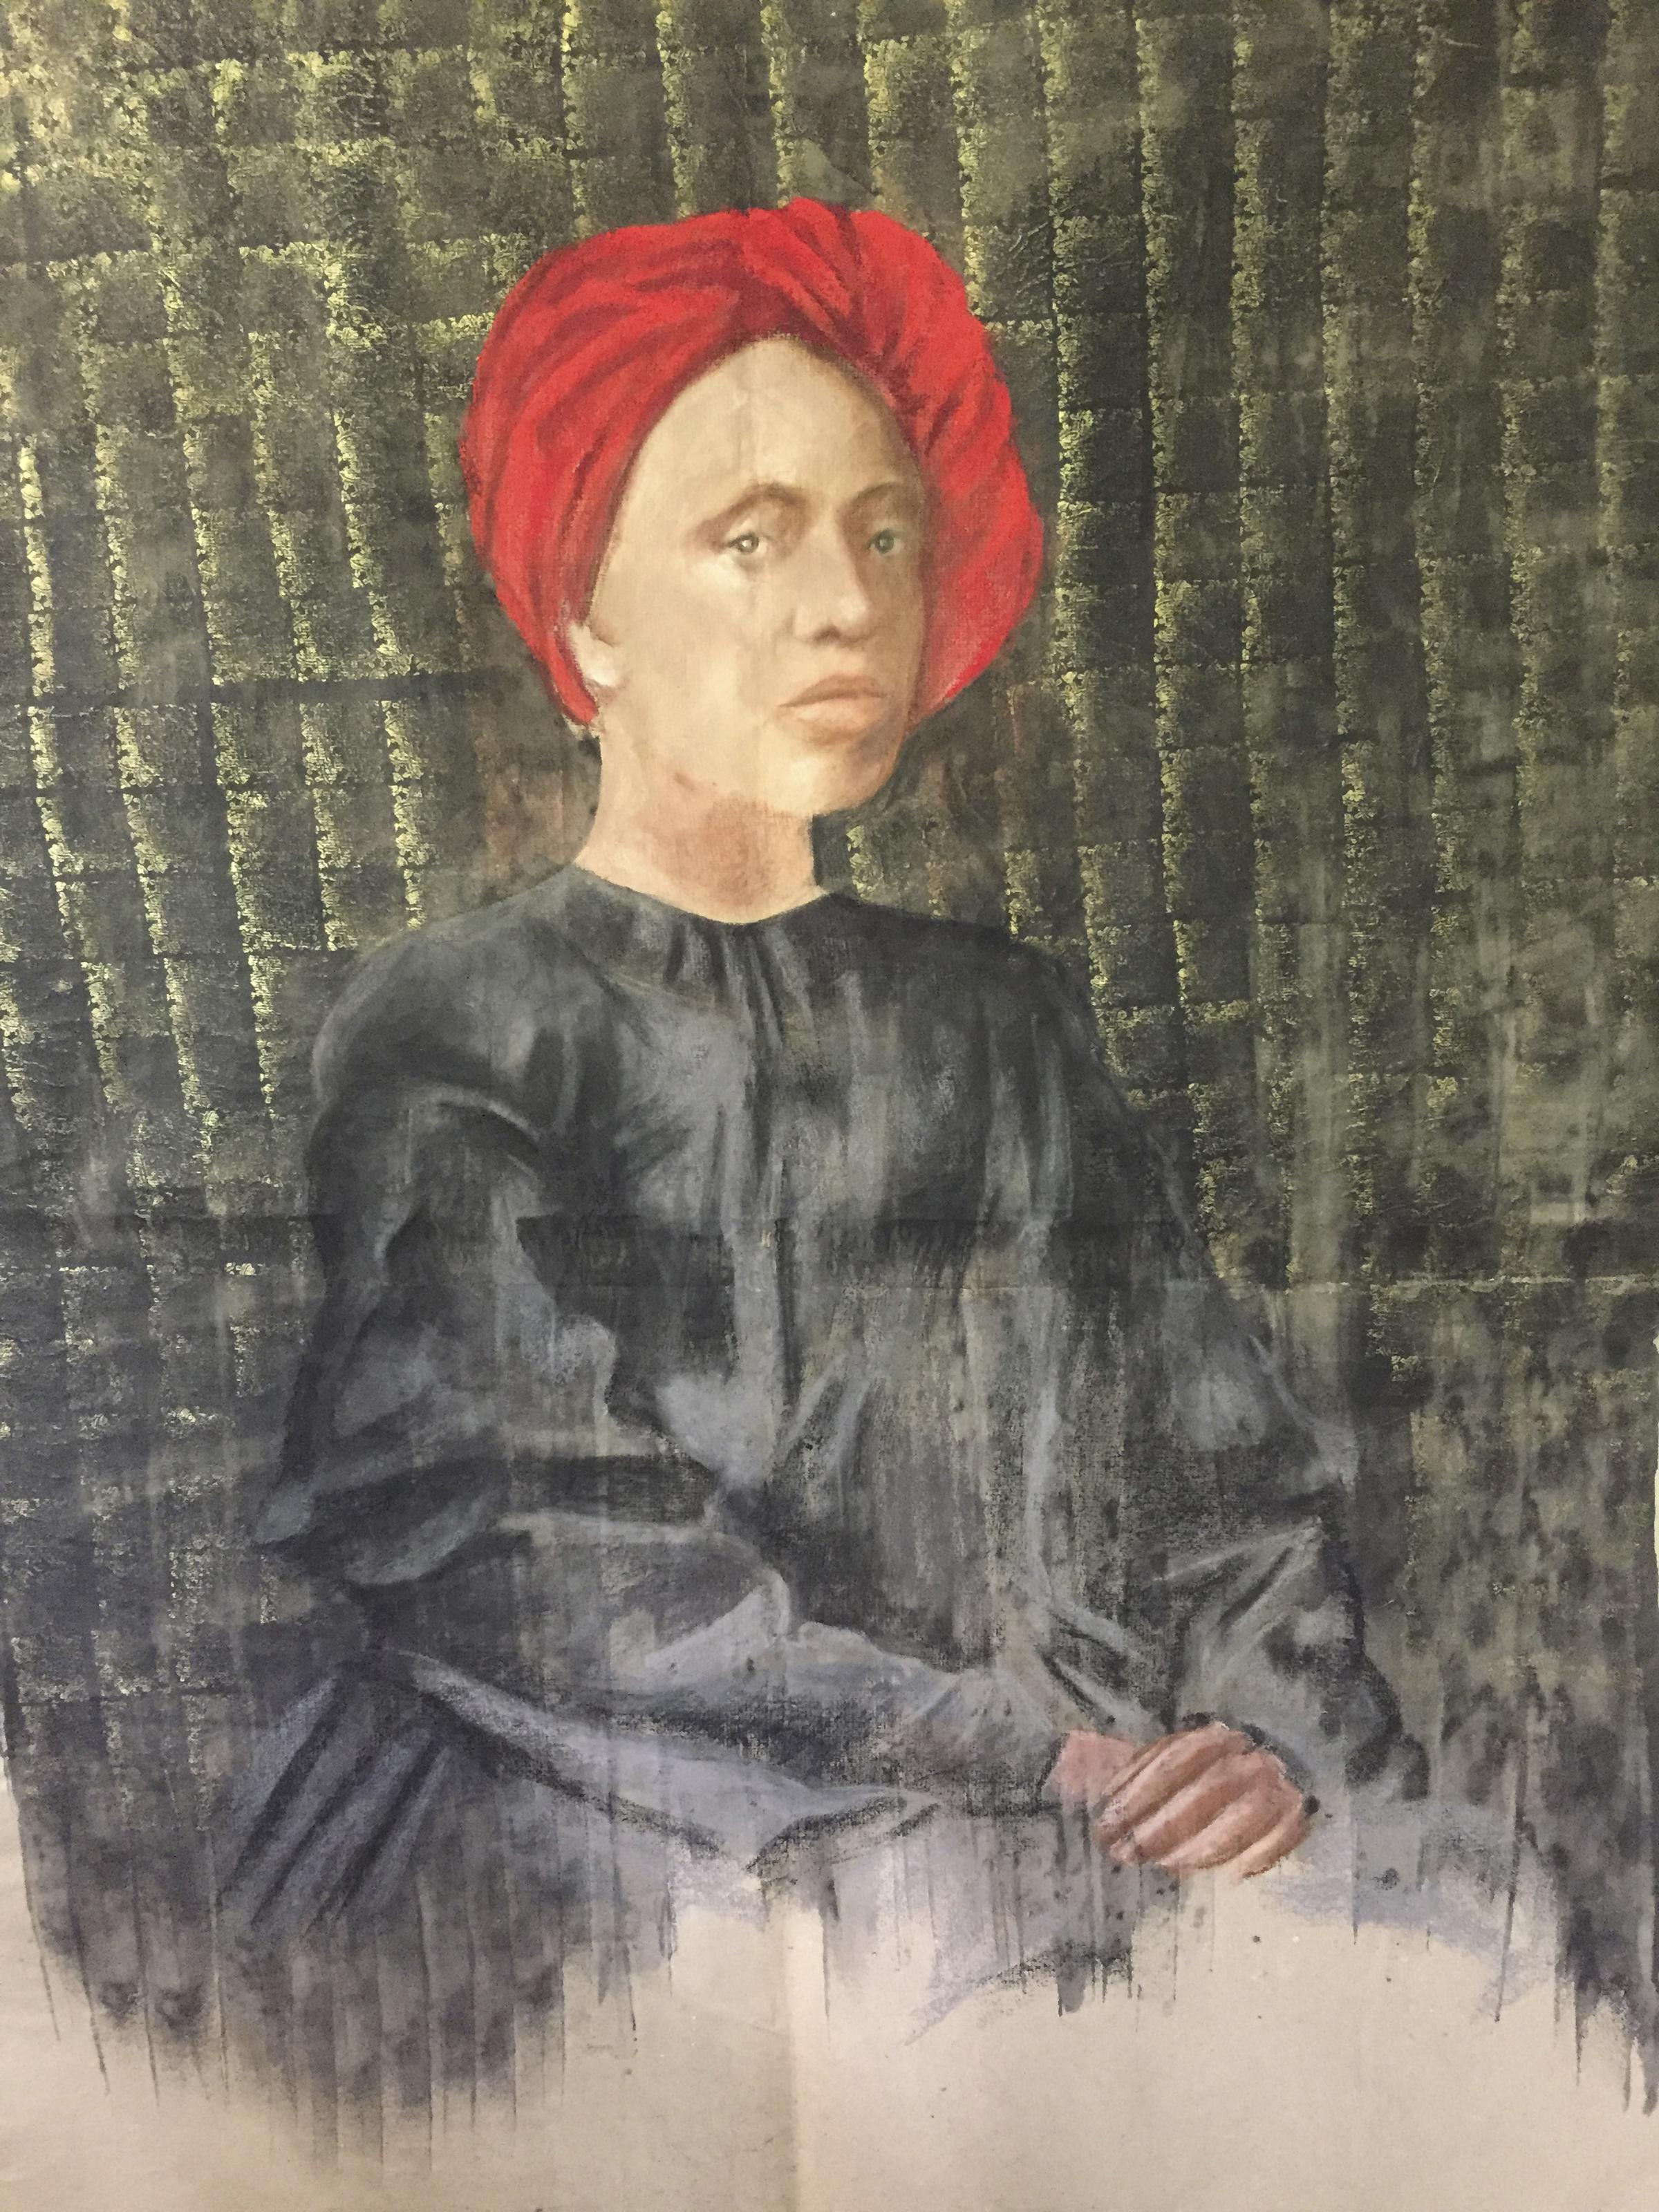 Portrait Painting Katherine Bakhoum-Tisne - "Femme au turban rouge Peinture à l'huile 63" x 47" inch par Katherine Bakhoum Tisné